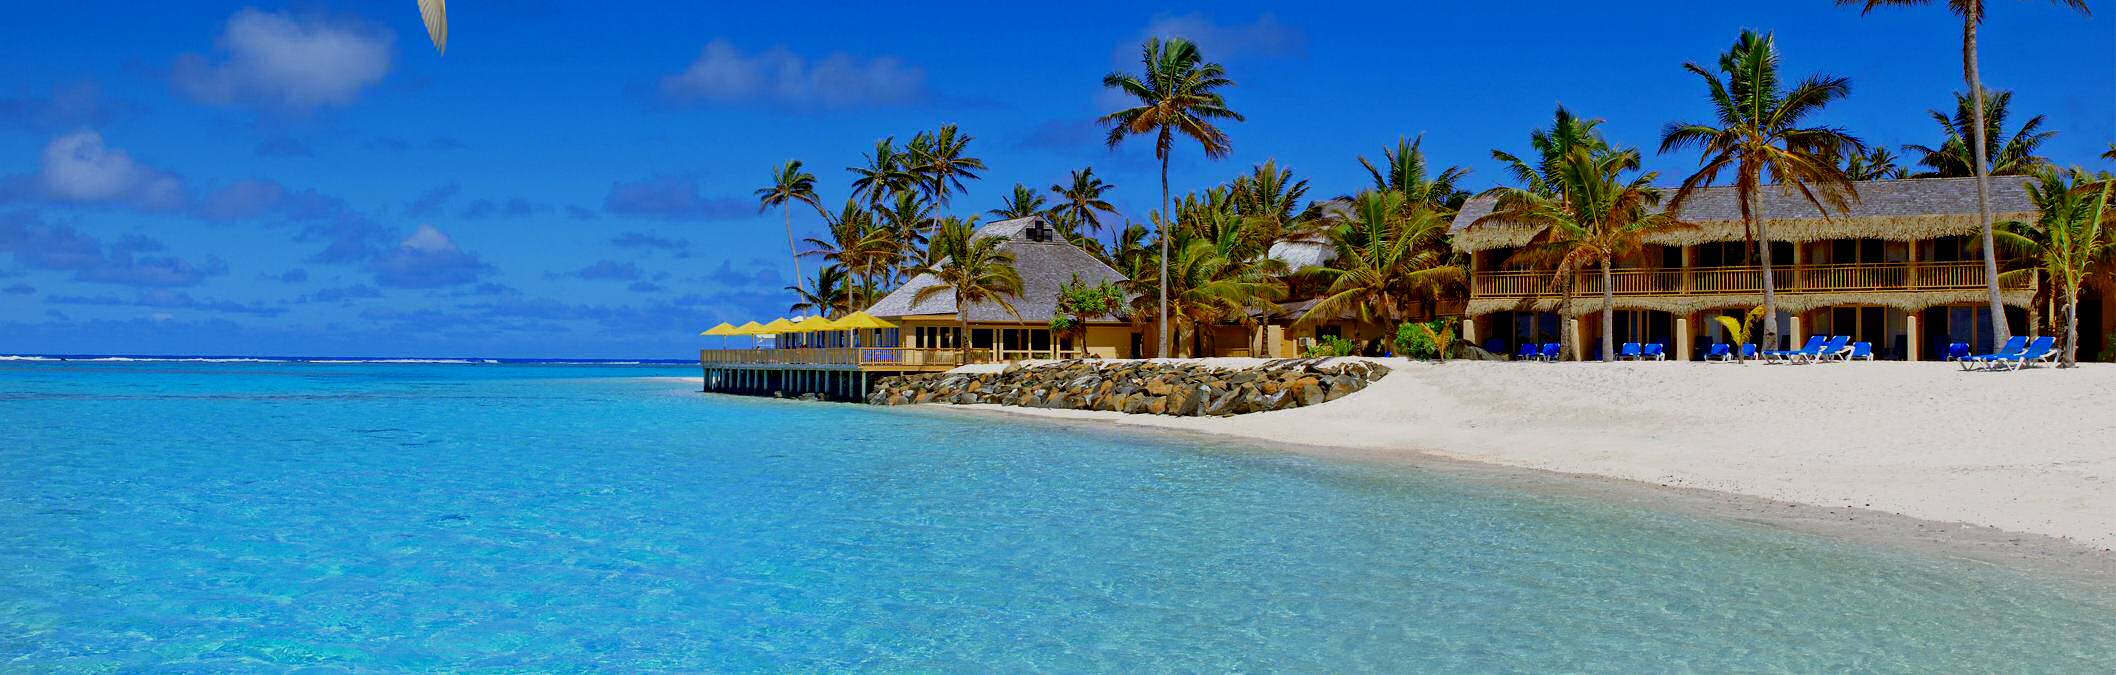 Rarotongan Beach Resort, Cook Islands